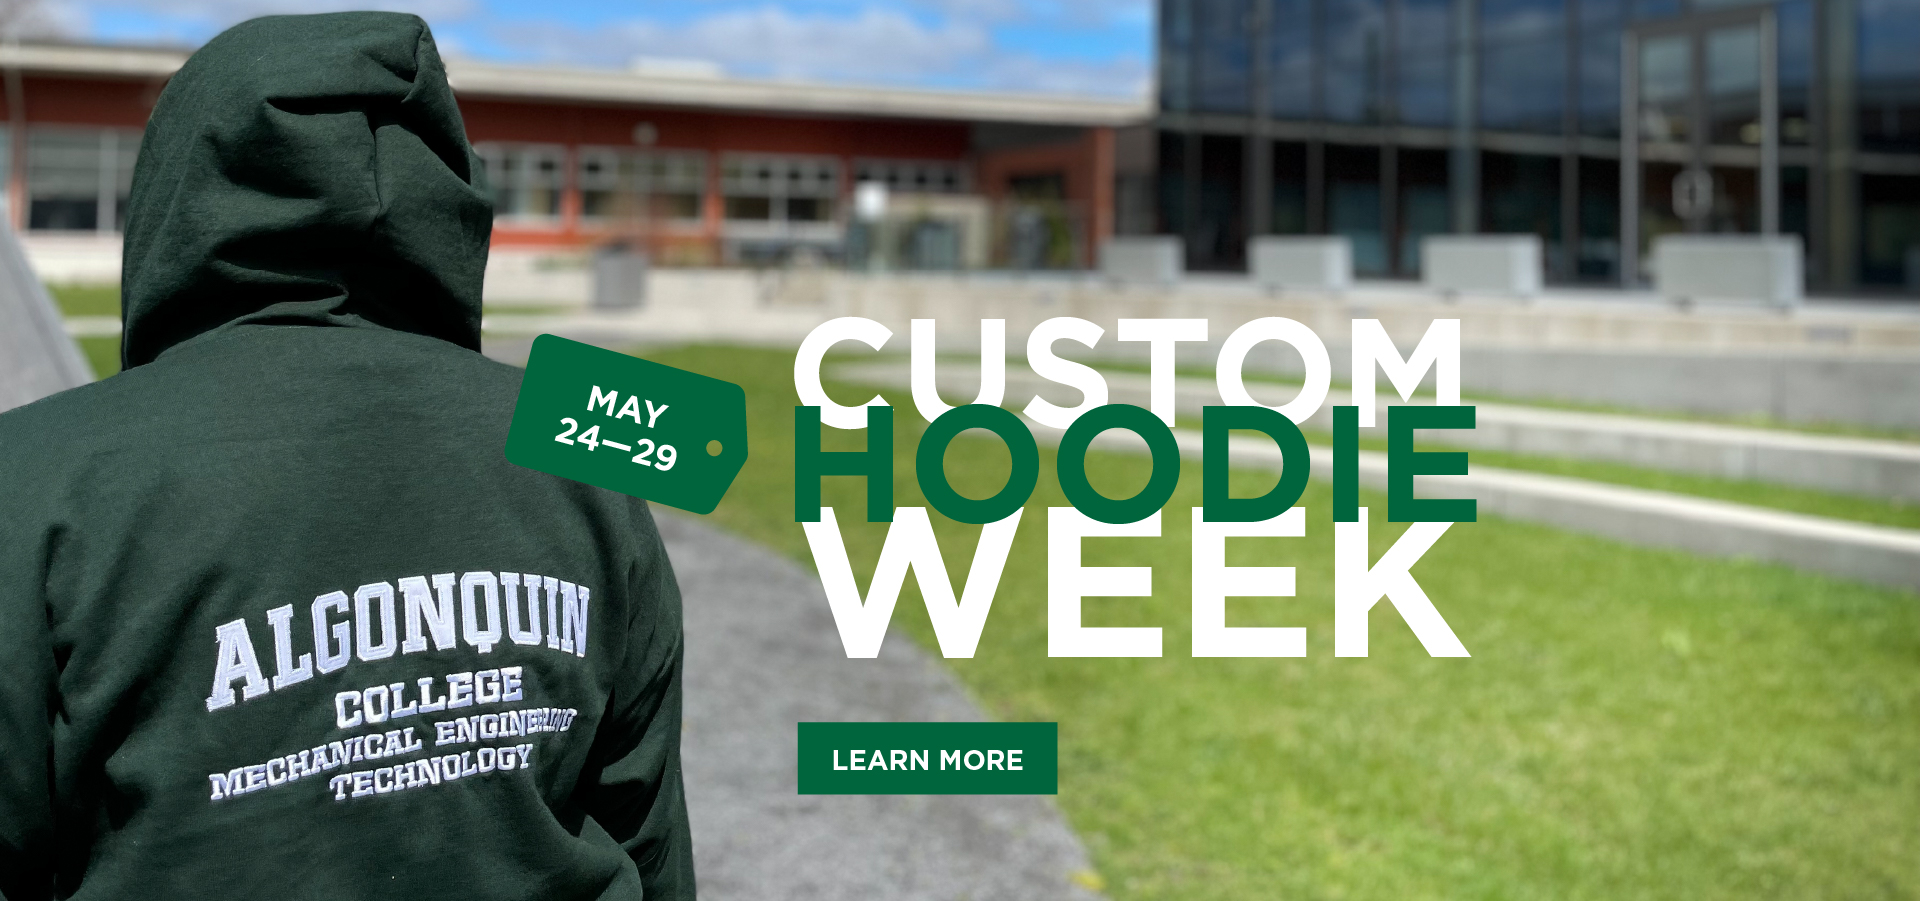 Custom Hoodie Week May 24 - 29. Zip-up or Pullover. Learn More.